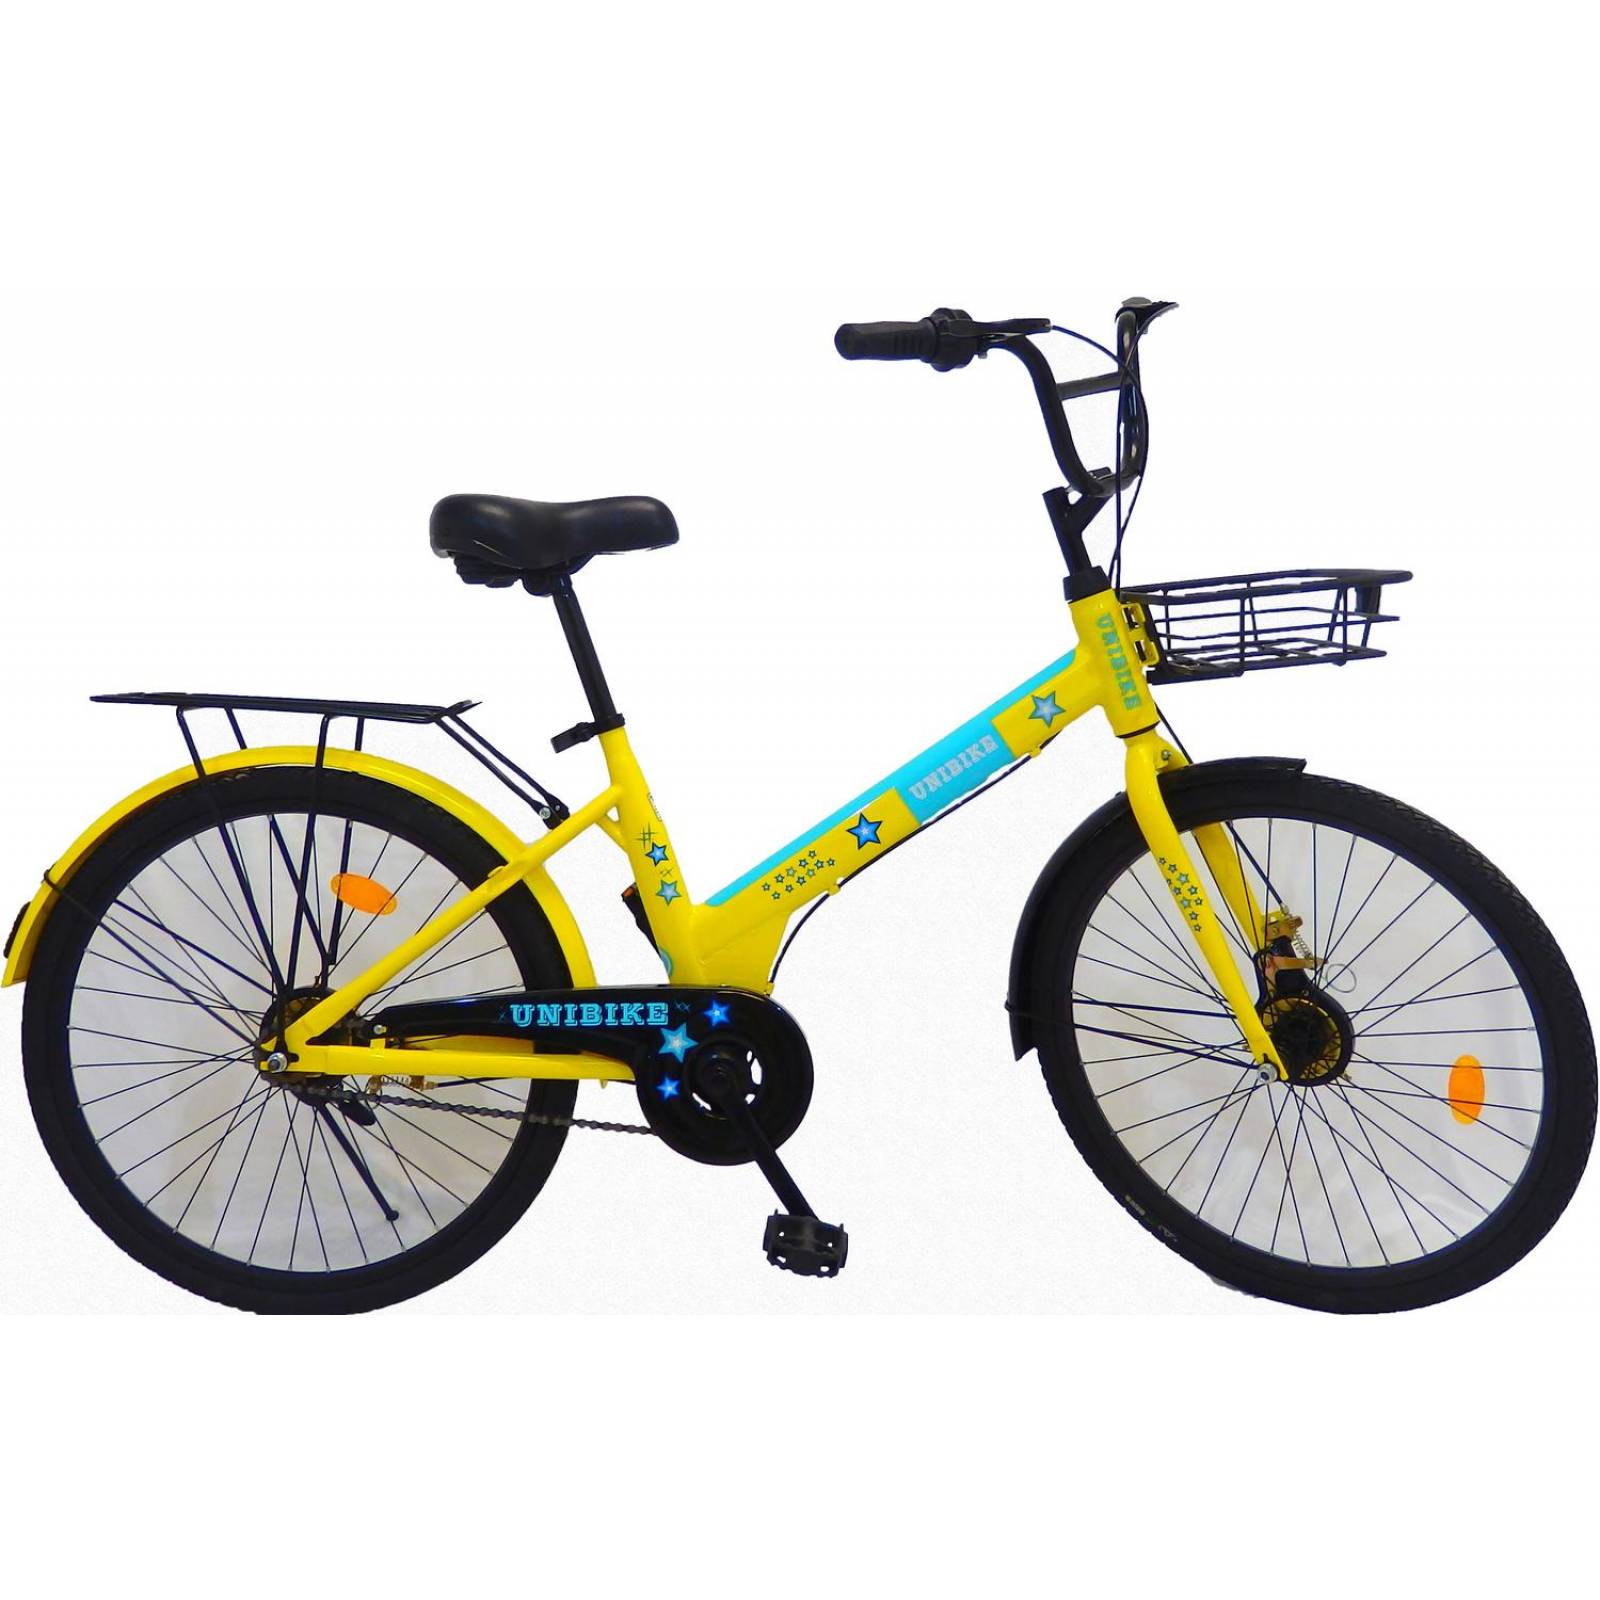 Bicicleta infantil rodada 24 llanta solida para niño o niña  - Celeste